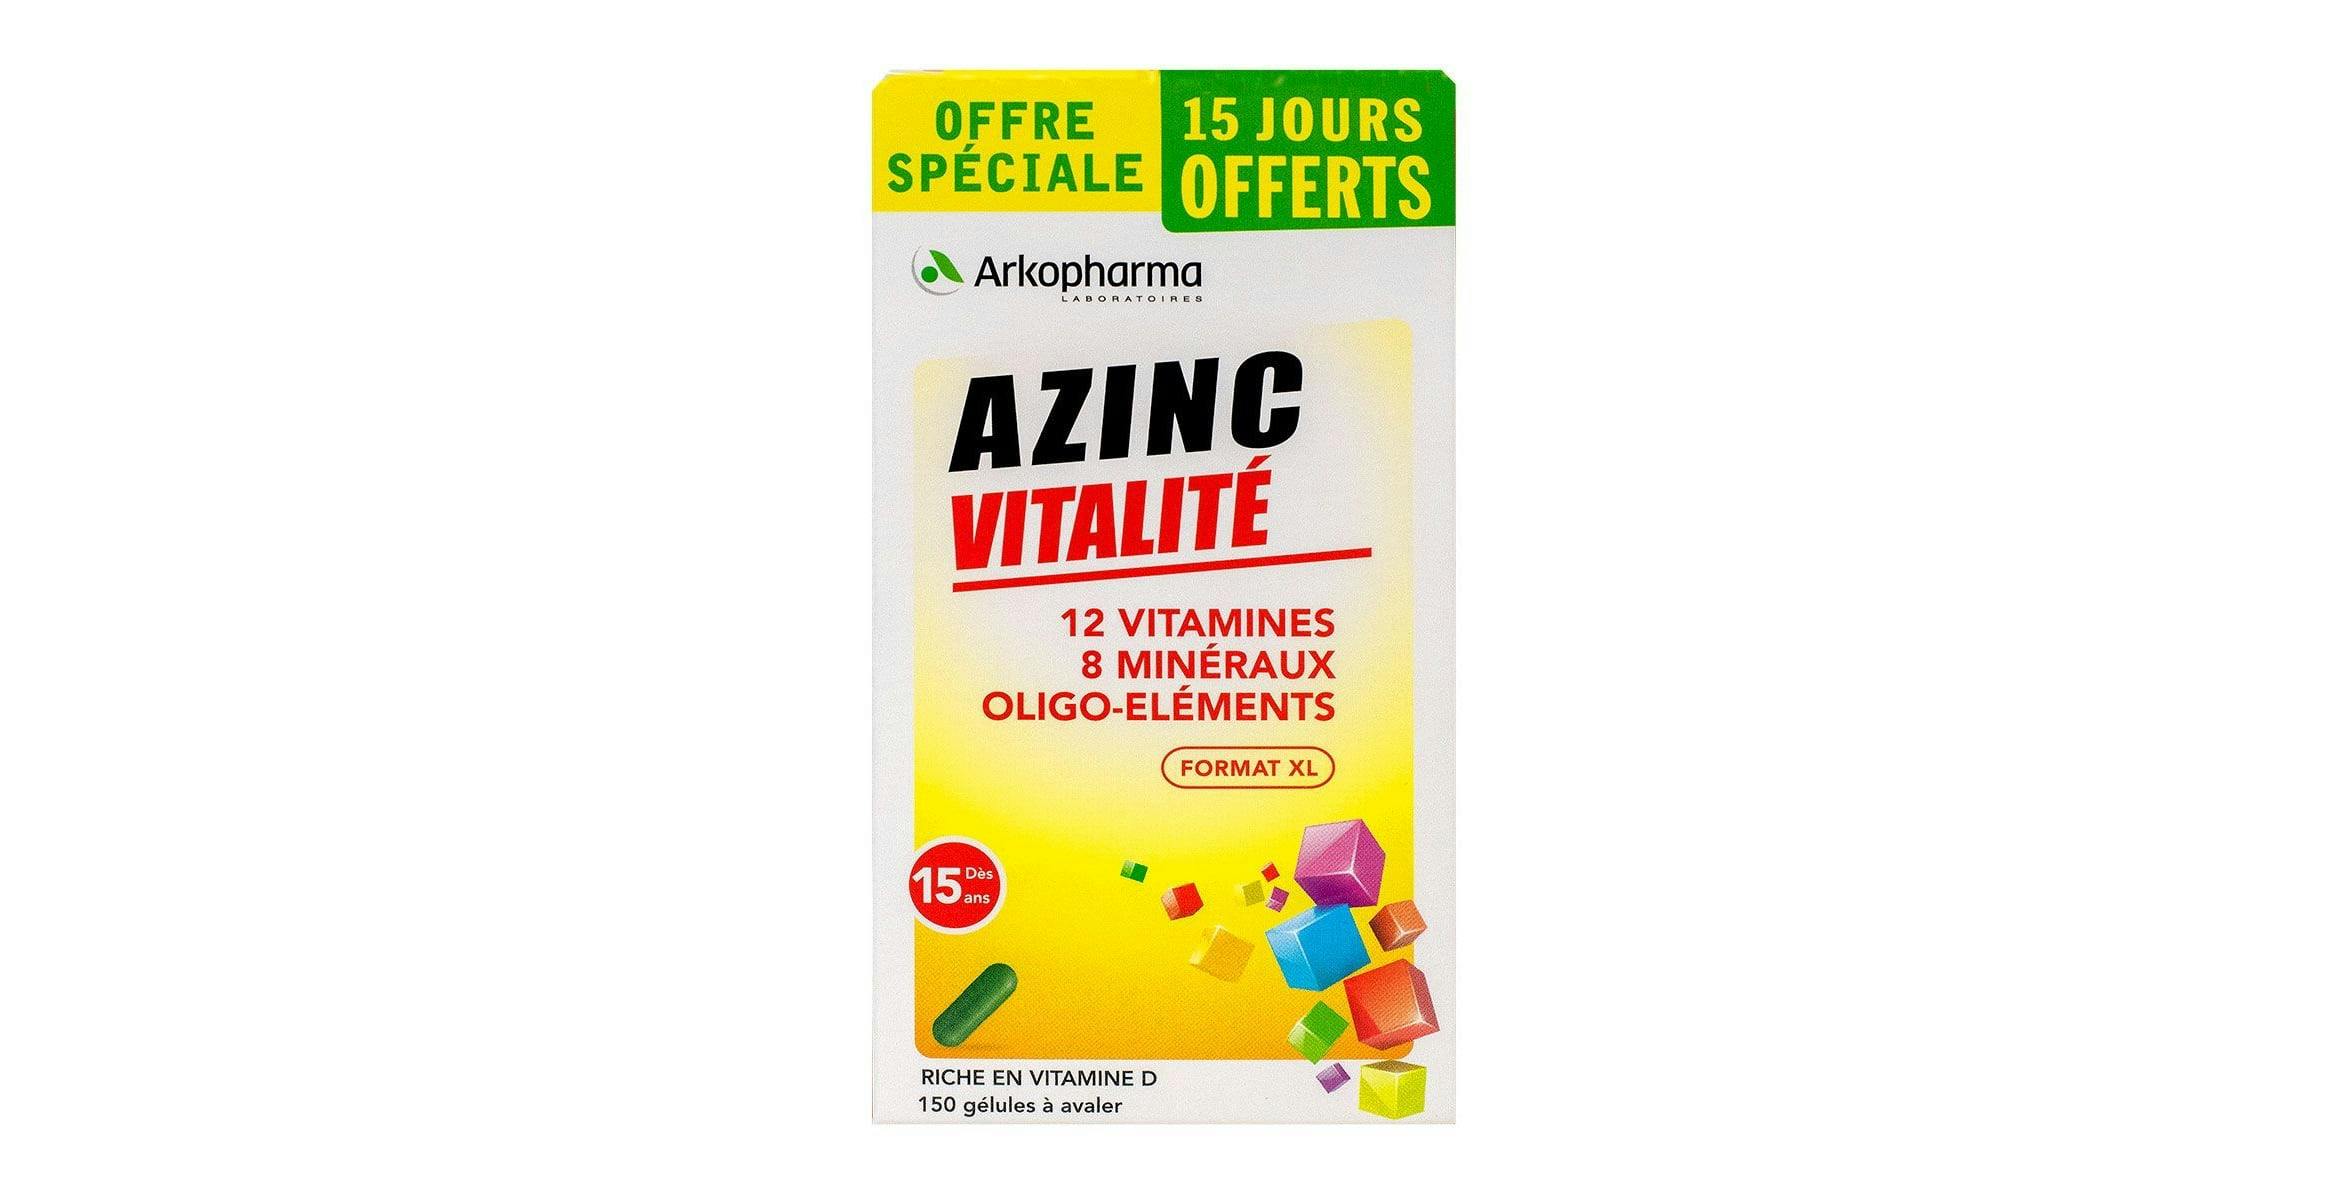 Azinc vitalite